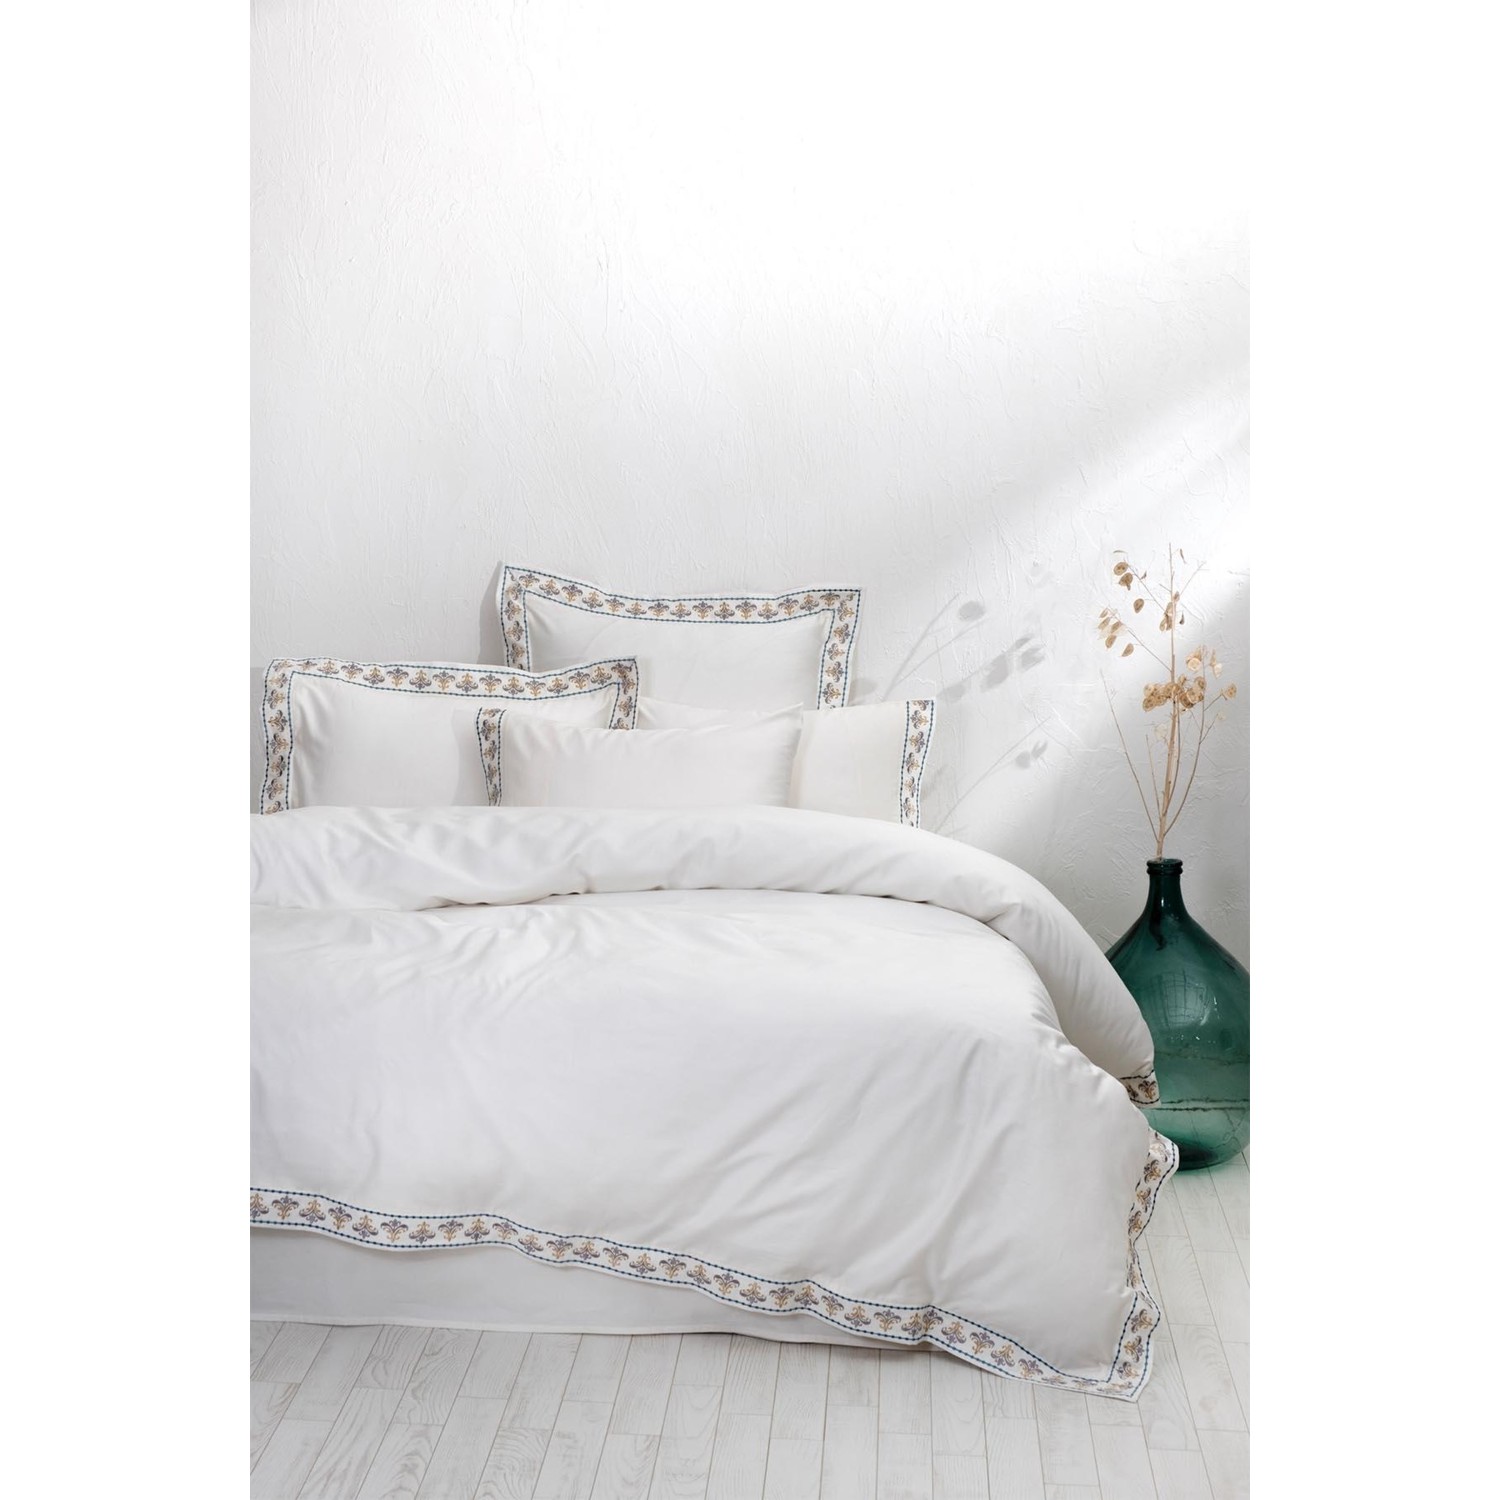 Экокотон Mira King Size Комплект постельного белья из 100% органического хлопка, атласа, кремового цвета с вышивкой, 240X220 см